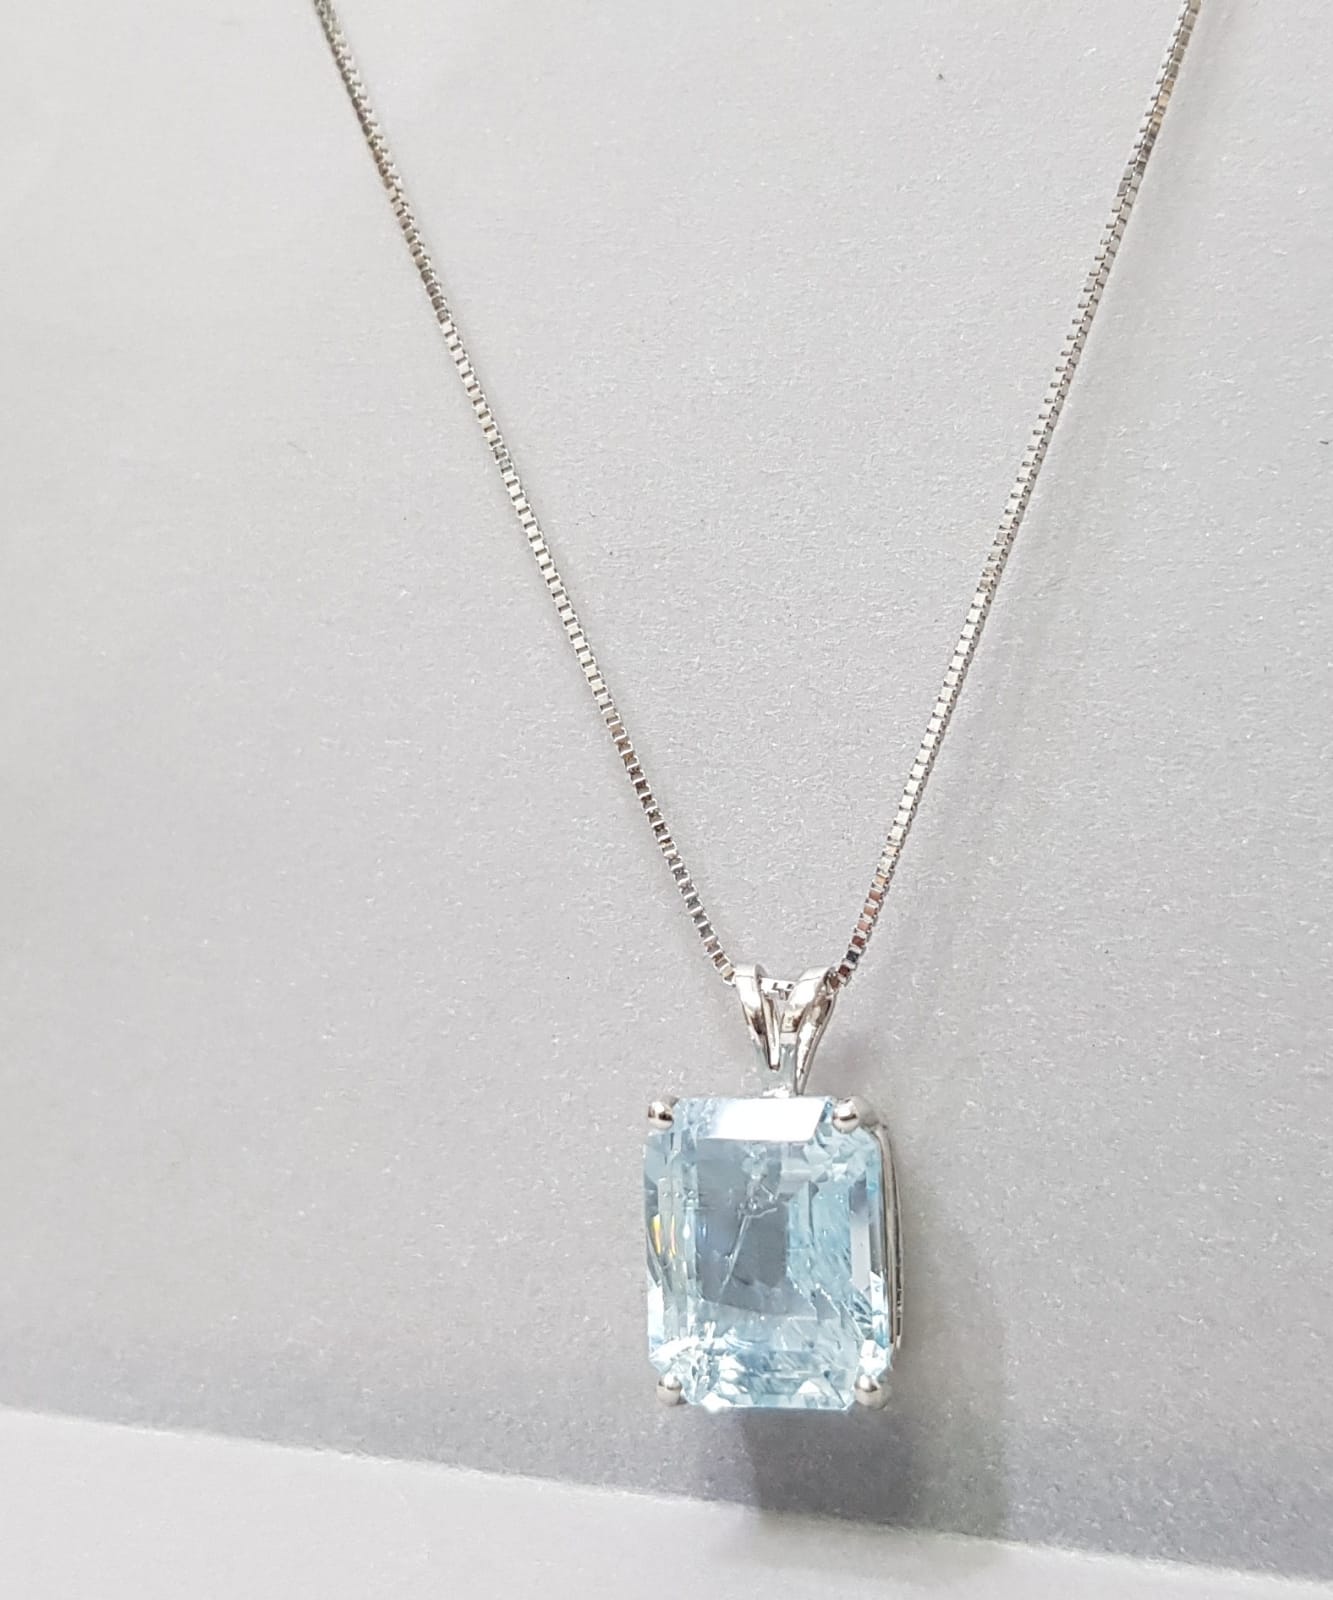 Aquamarine Gemstone Necklaces Online in USA - Aqua Stone Necklace